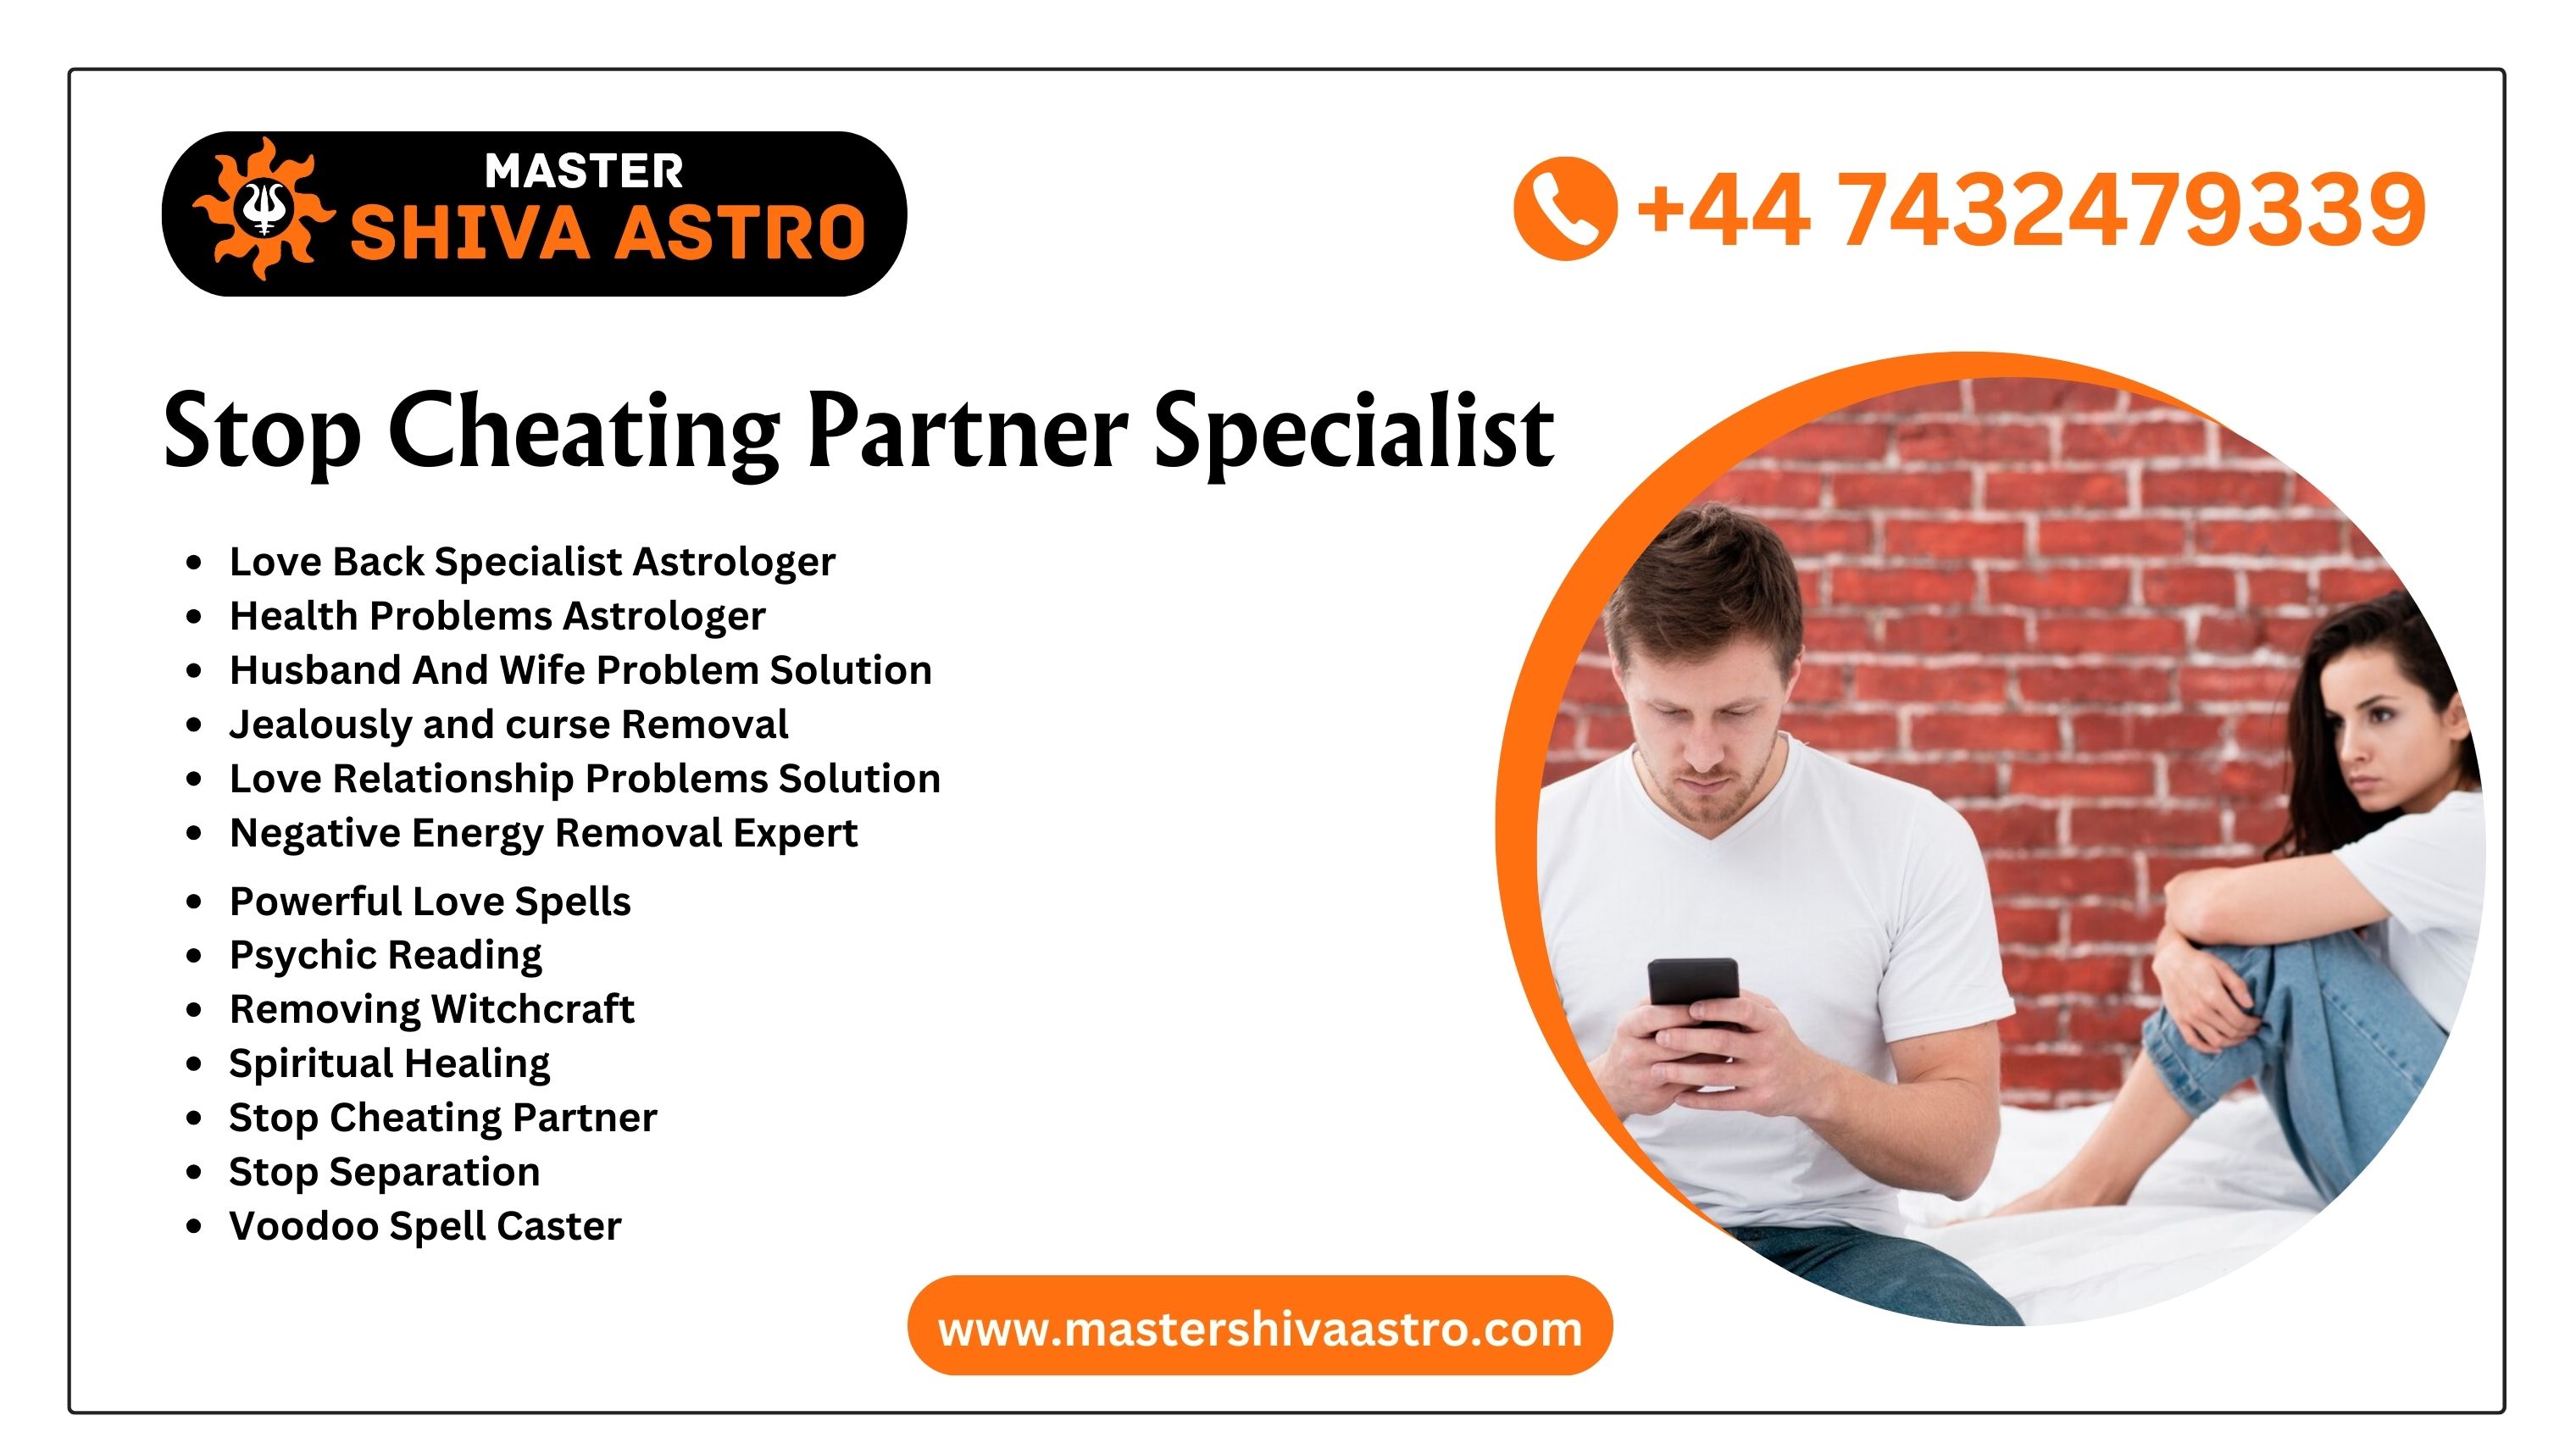 Stop Cheating Partner Specialist - Master Shiva